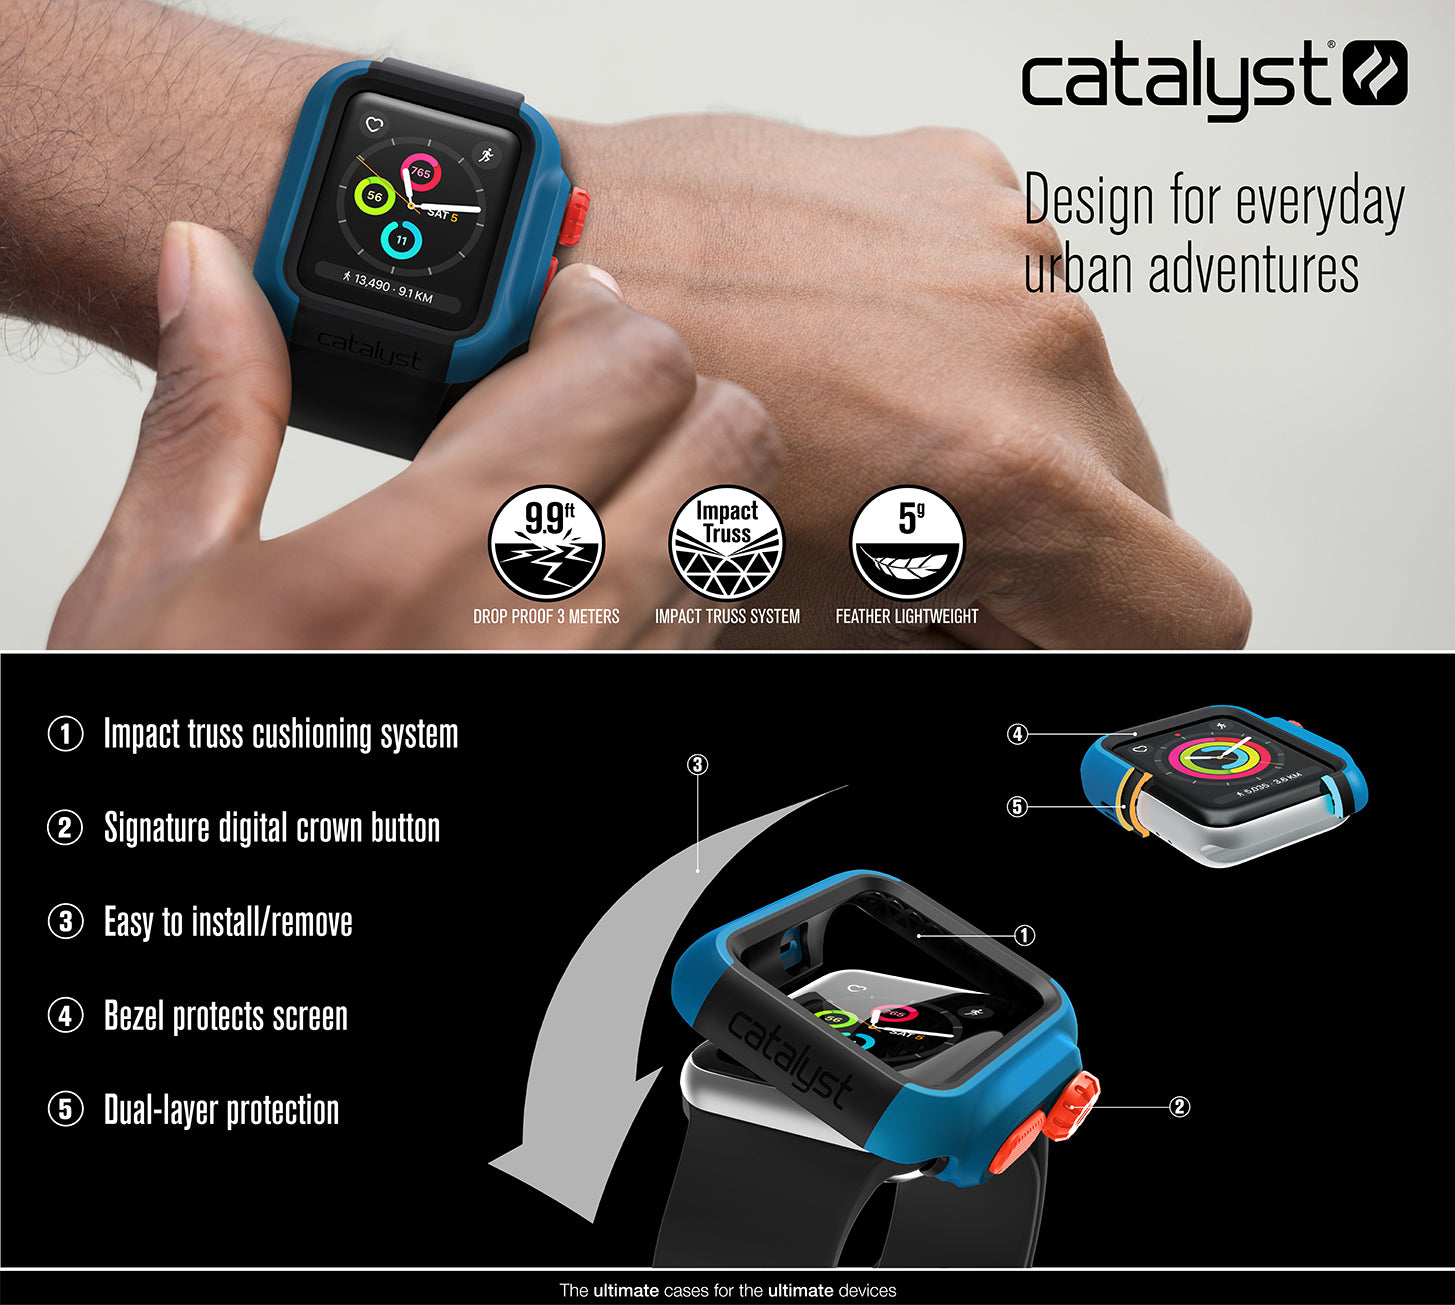 catalyst case apple watch 3